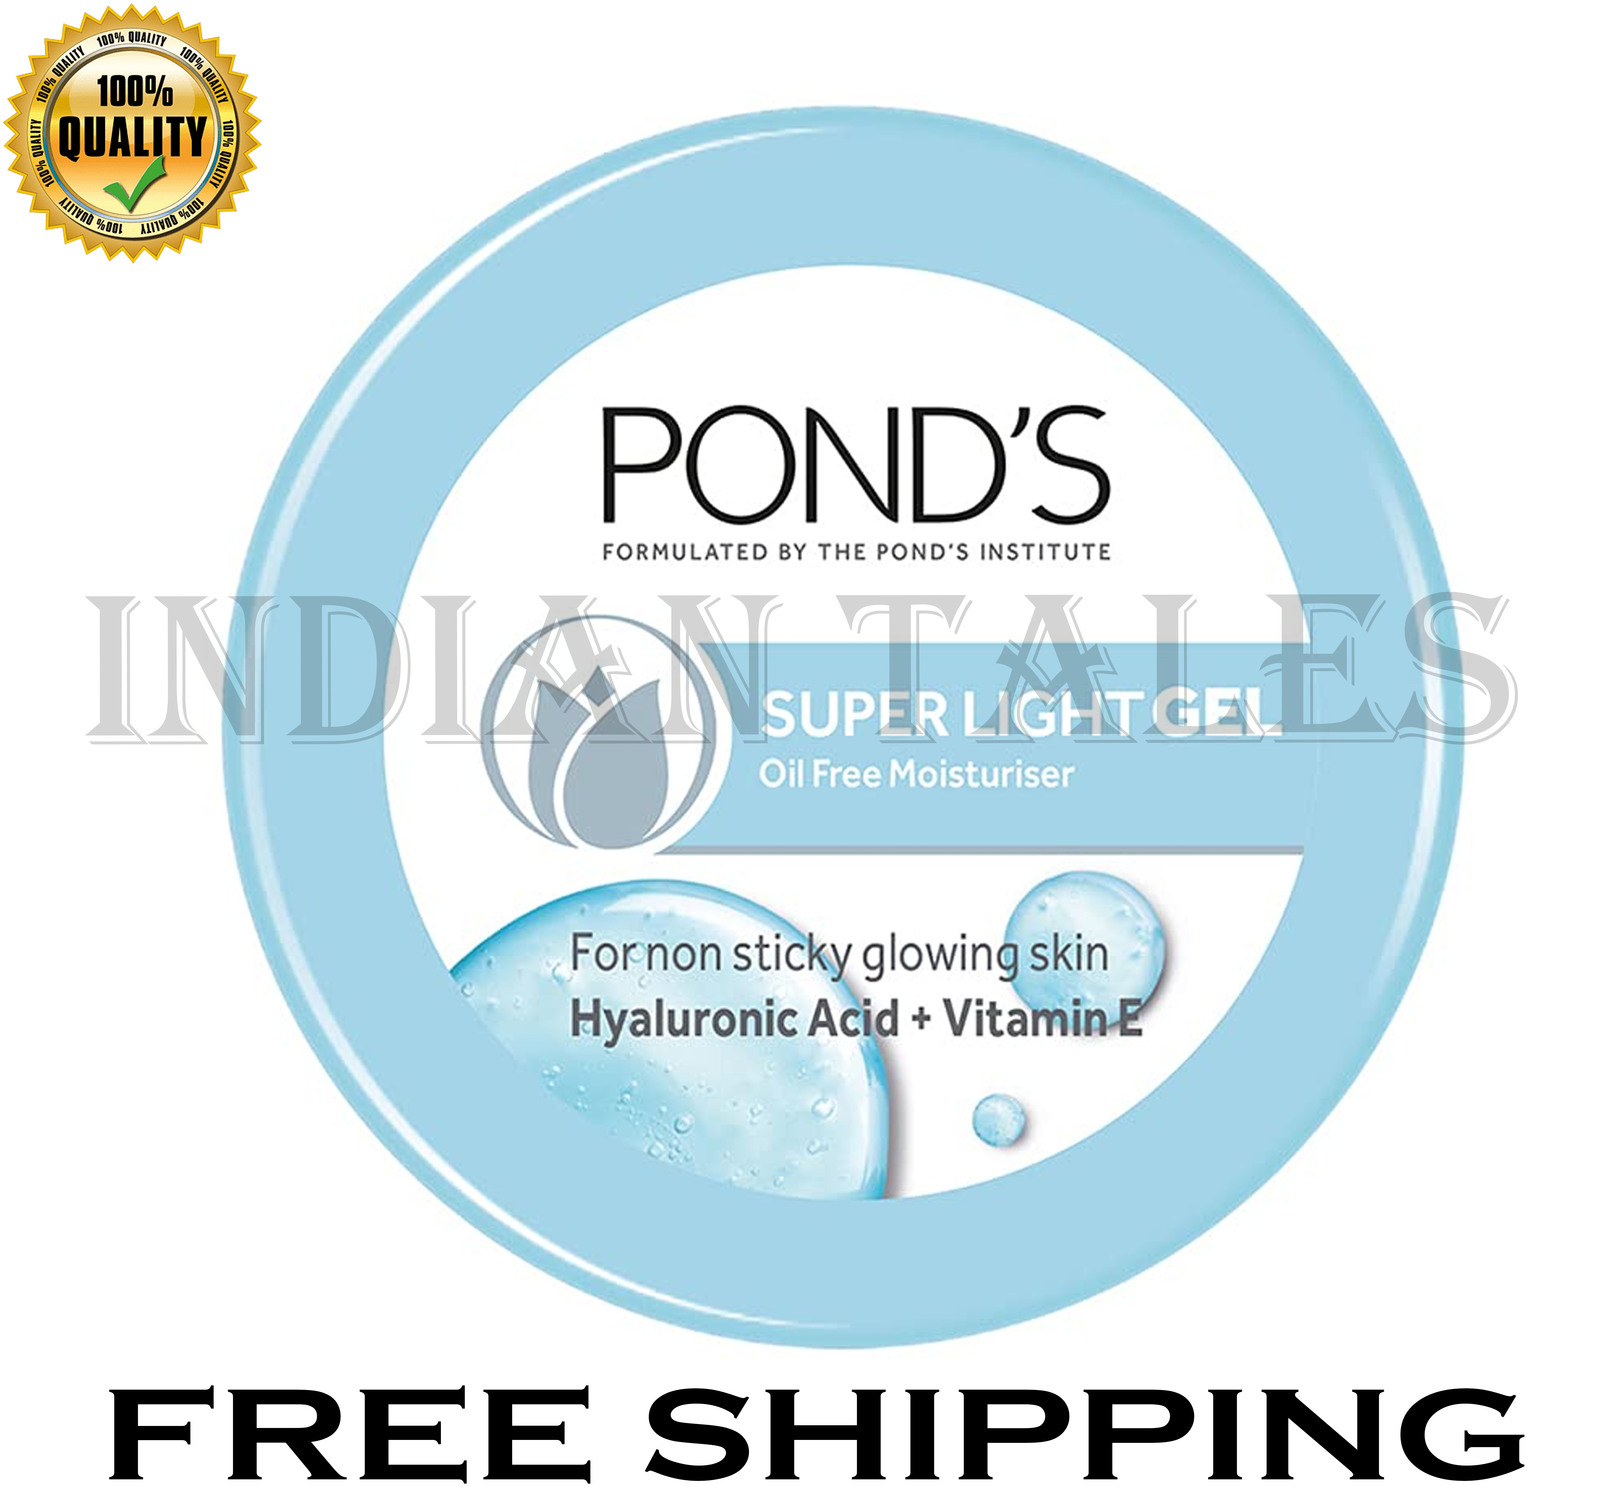 POND'S Super Light Gel Face Moisturiser, 147 g Super lightweight and non-oily  - $26.99